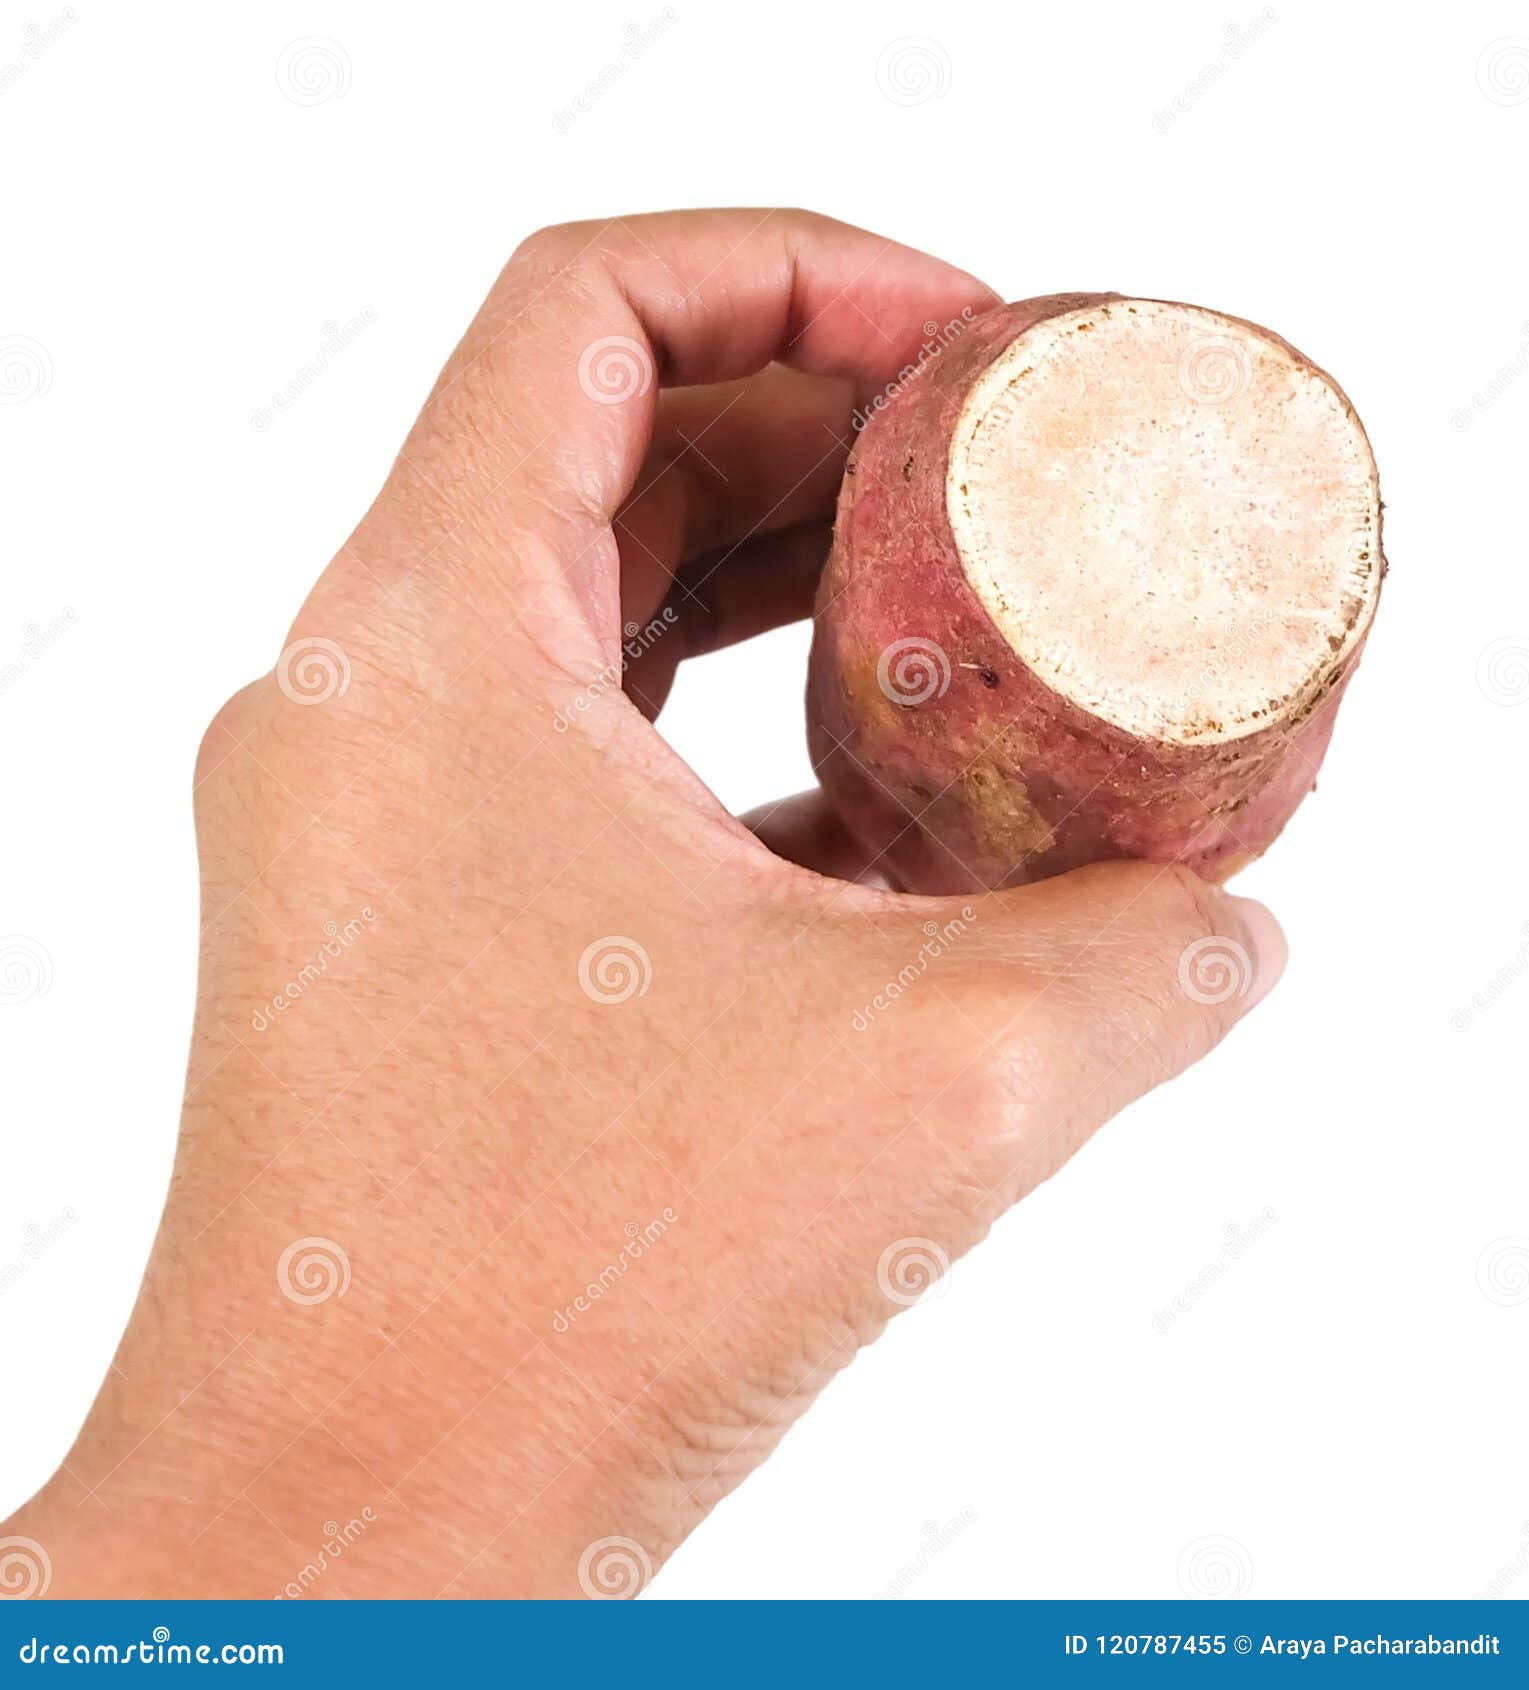 hand hodling raw sweet potato on white background